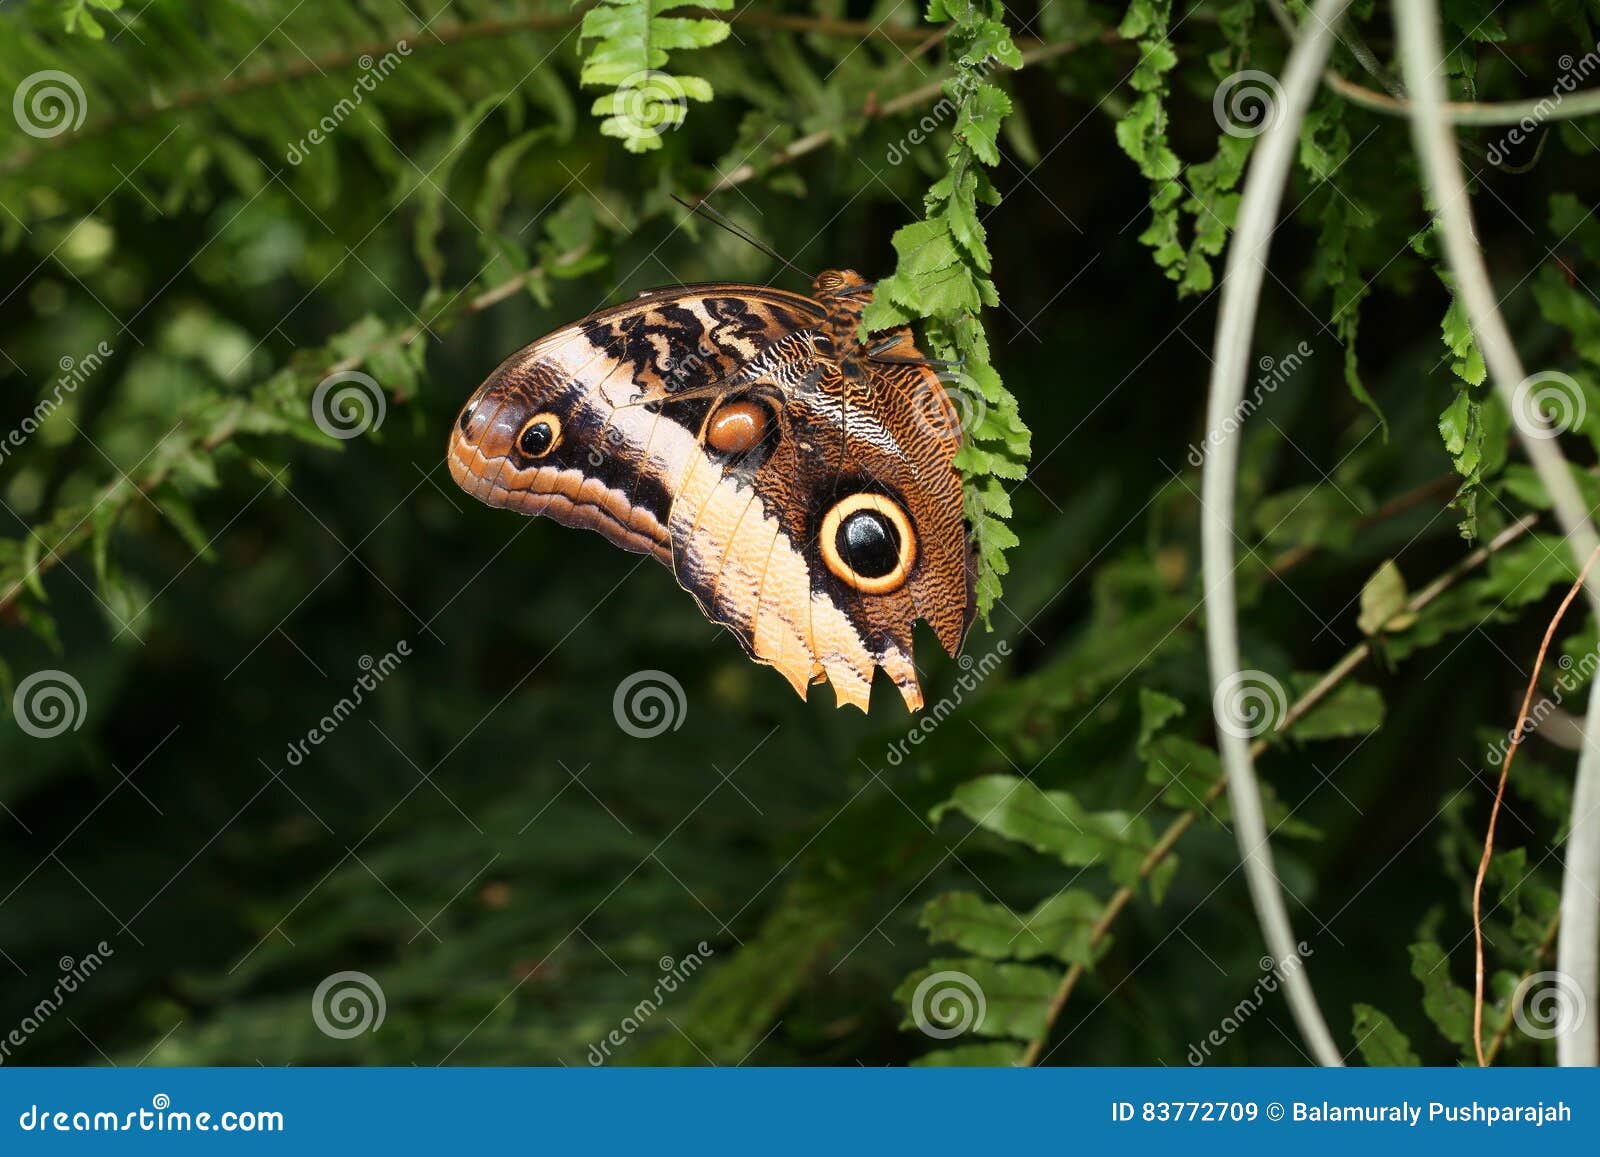 caligo or owl butterfly